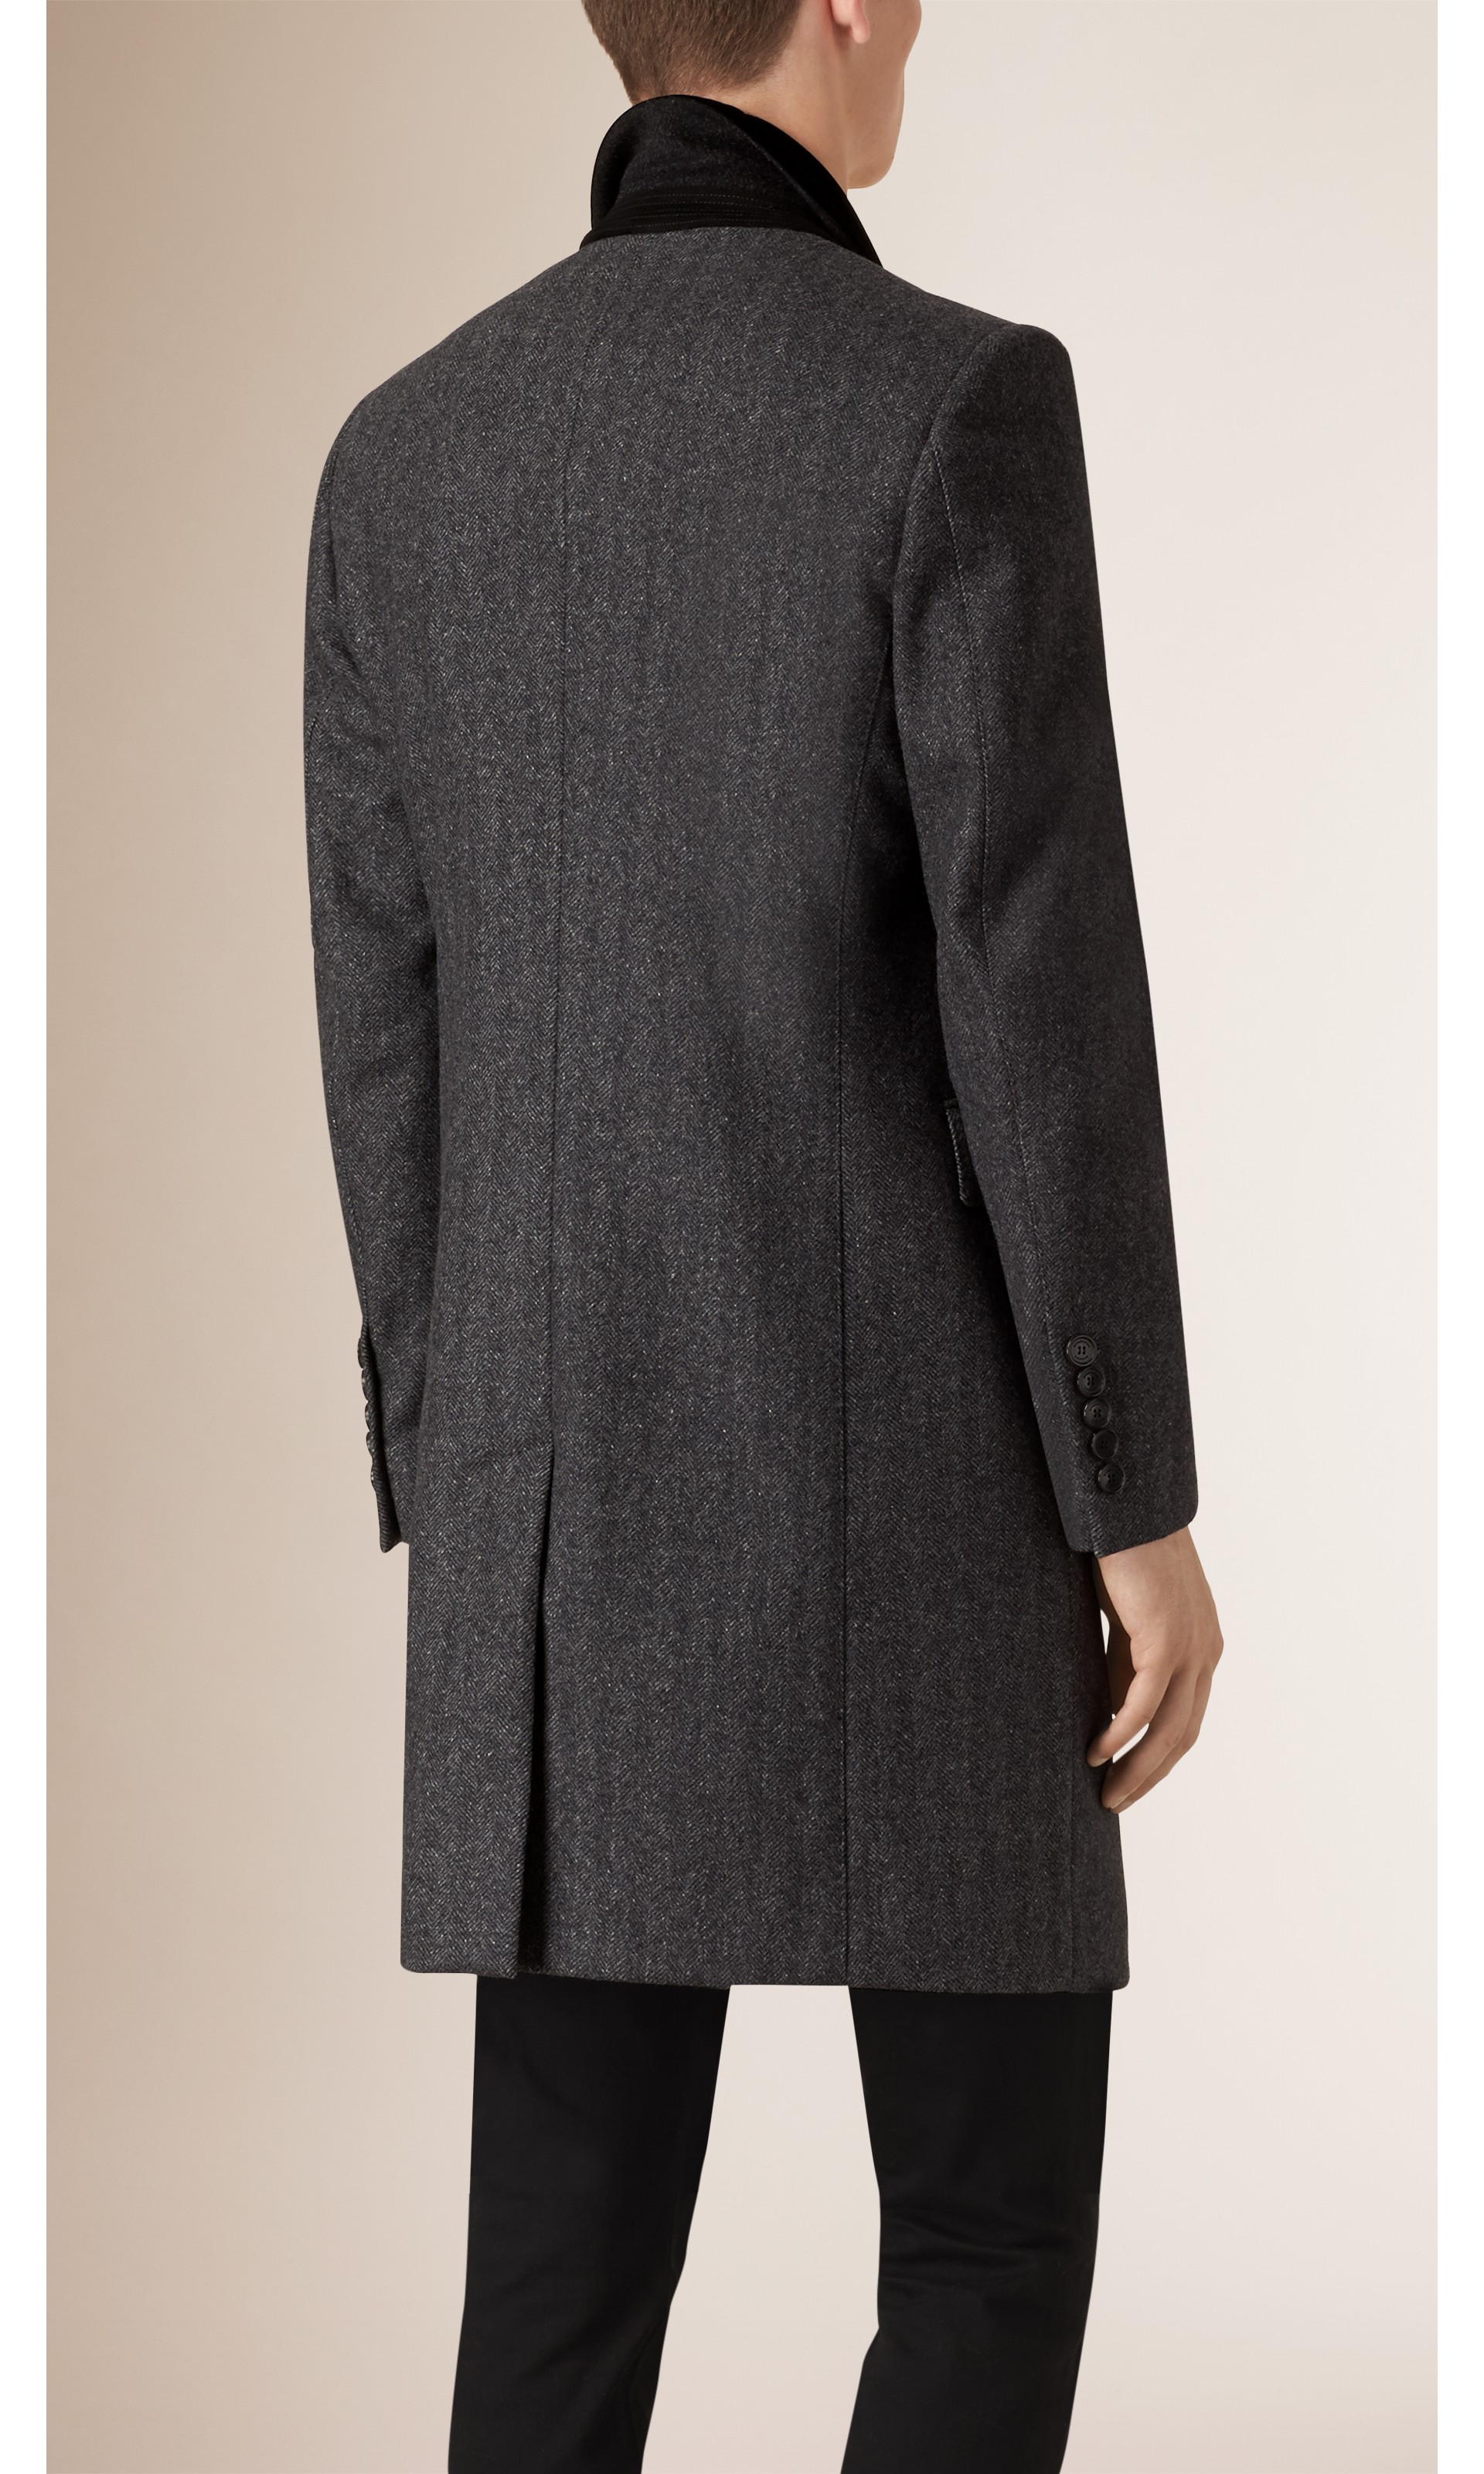 Virgin Wool Cashmere Topcoat with Velvet Topcollar in Charcoal - Men ...